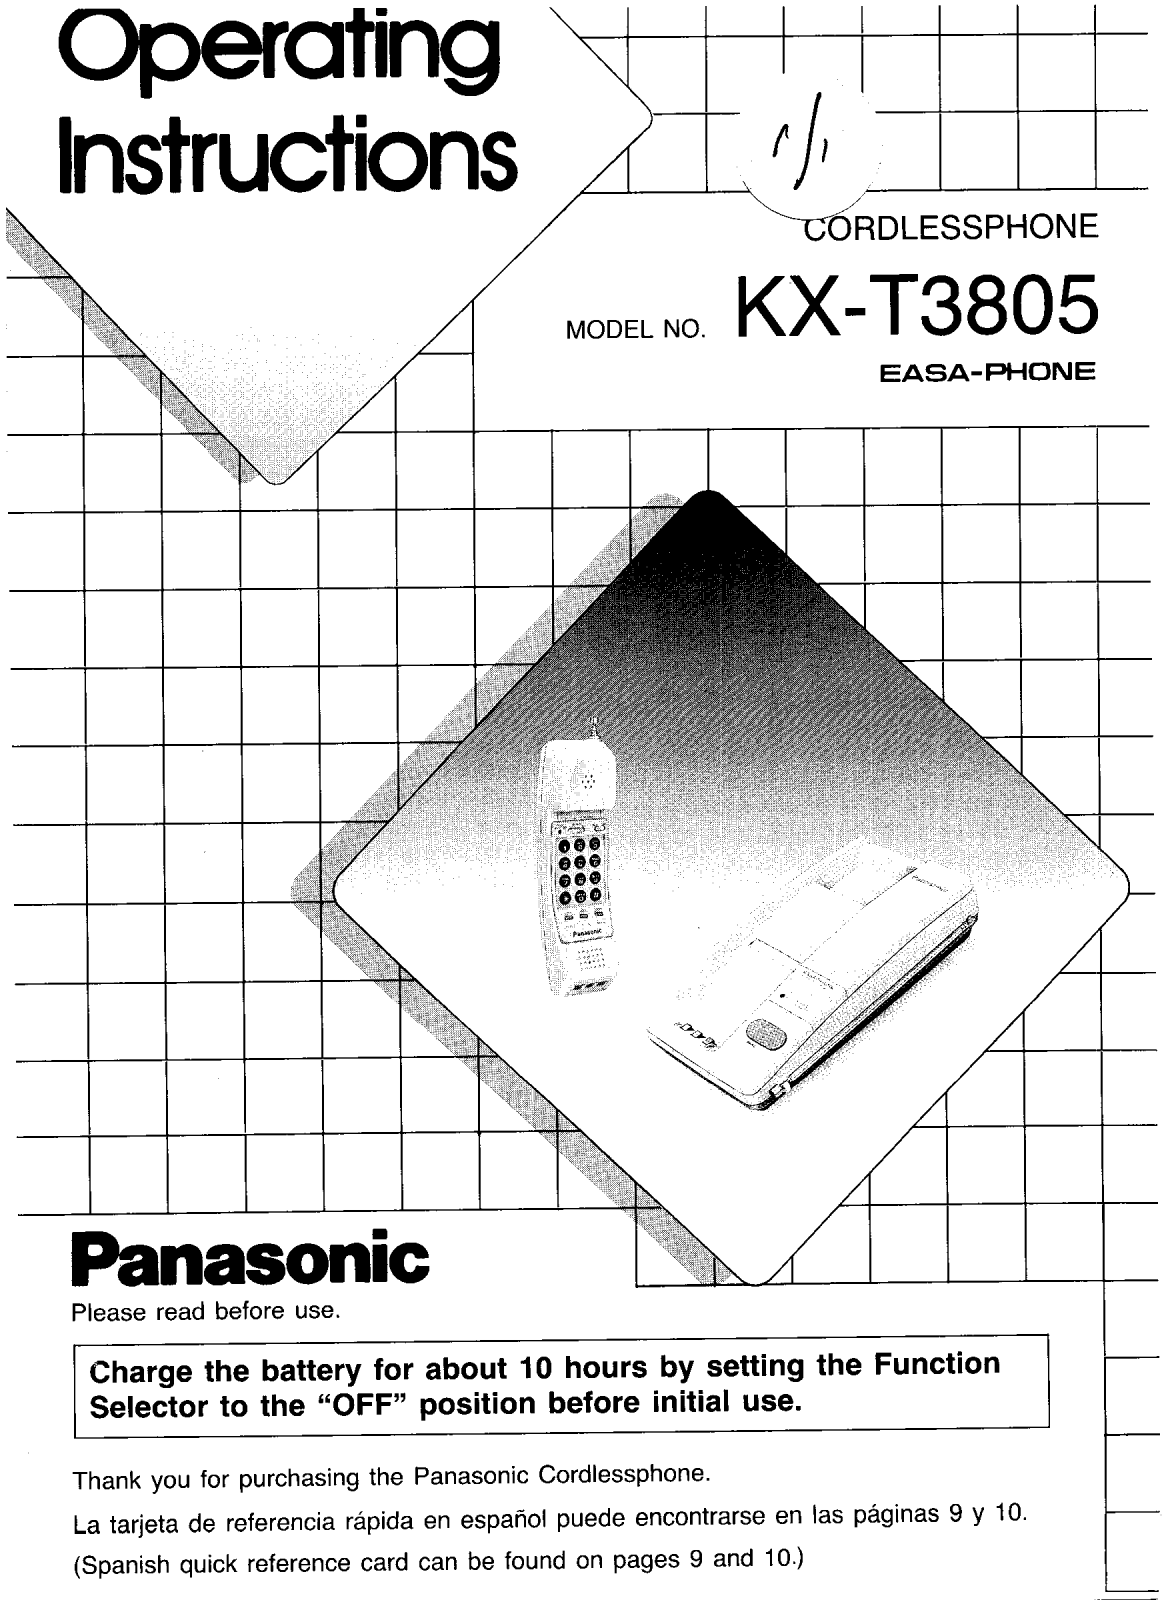 Panasonic kx-t3805 Operation Manual